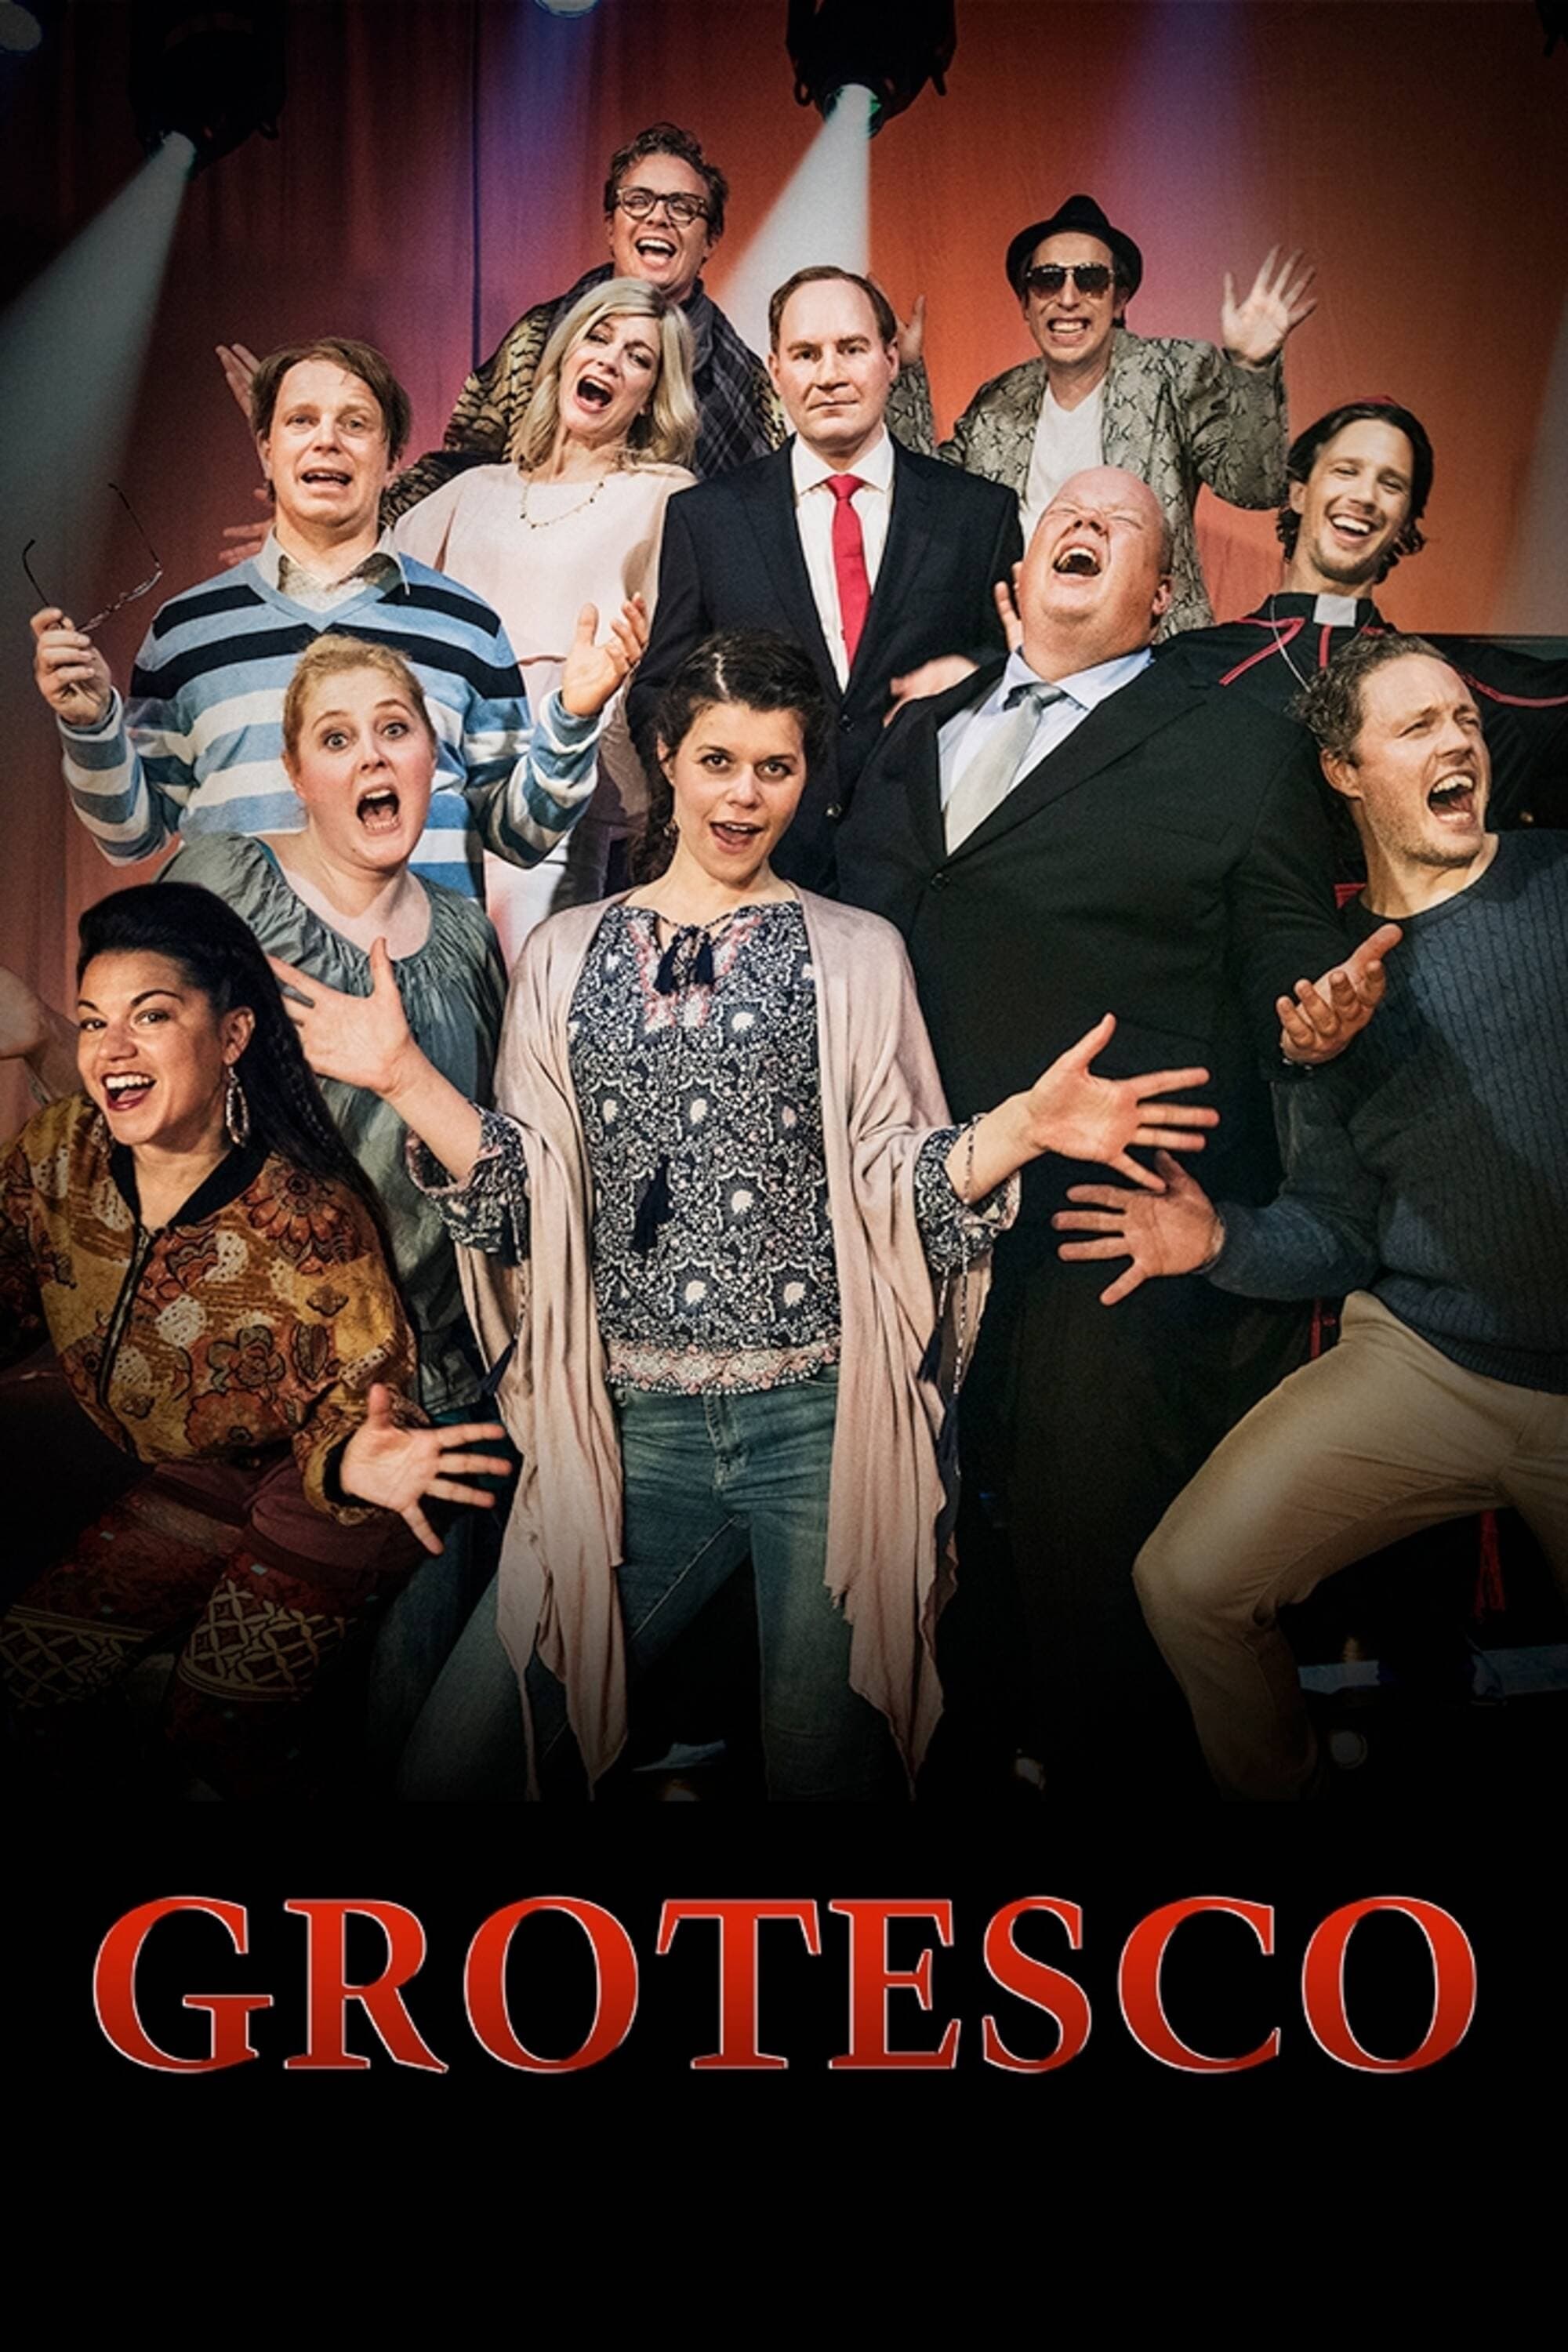 Grotesco (2007)